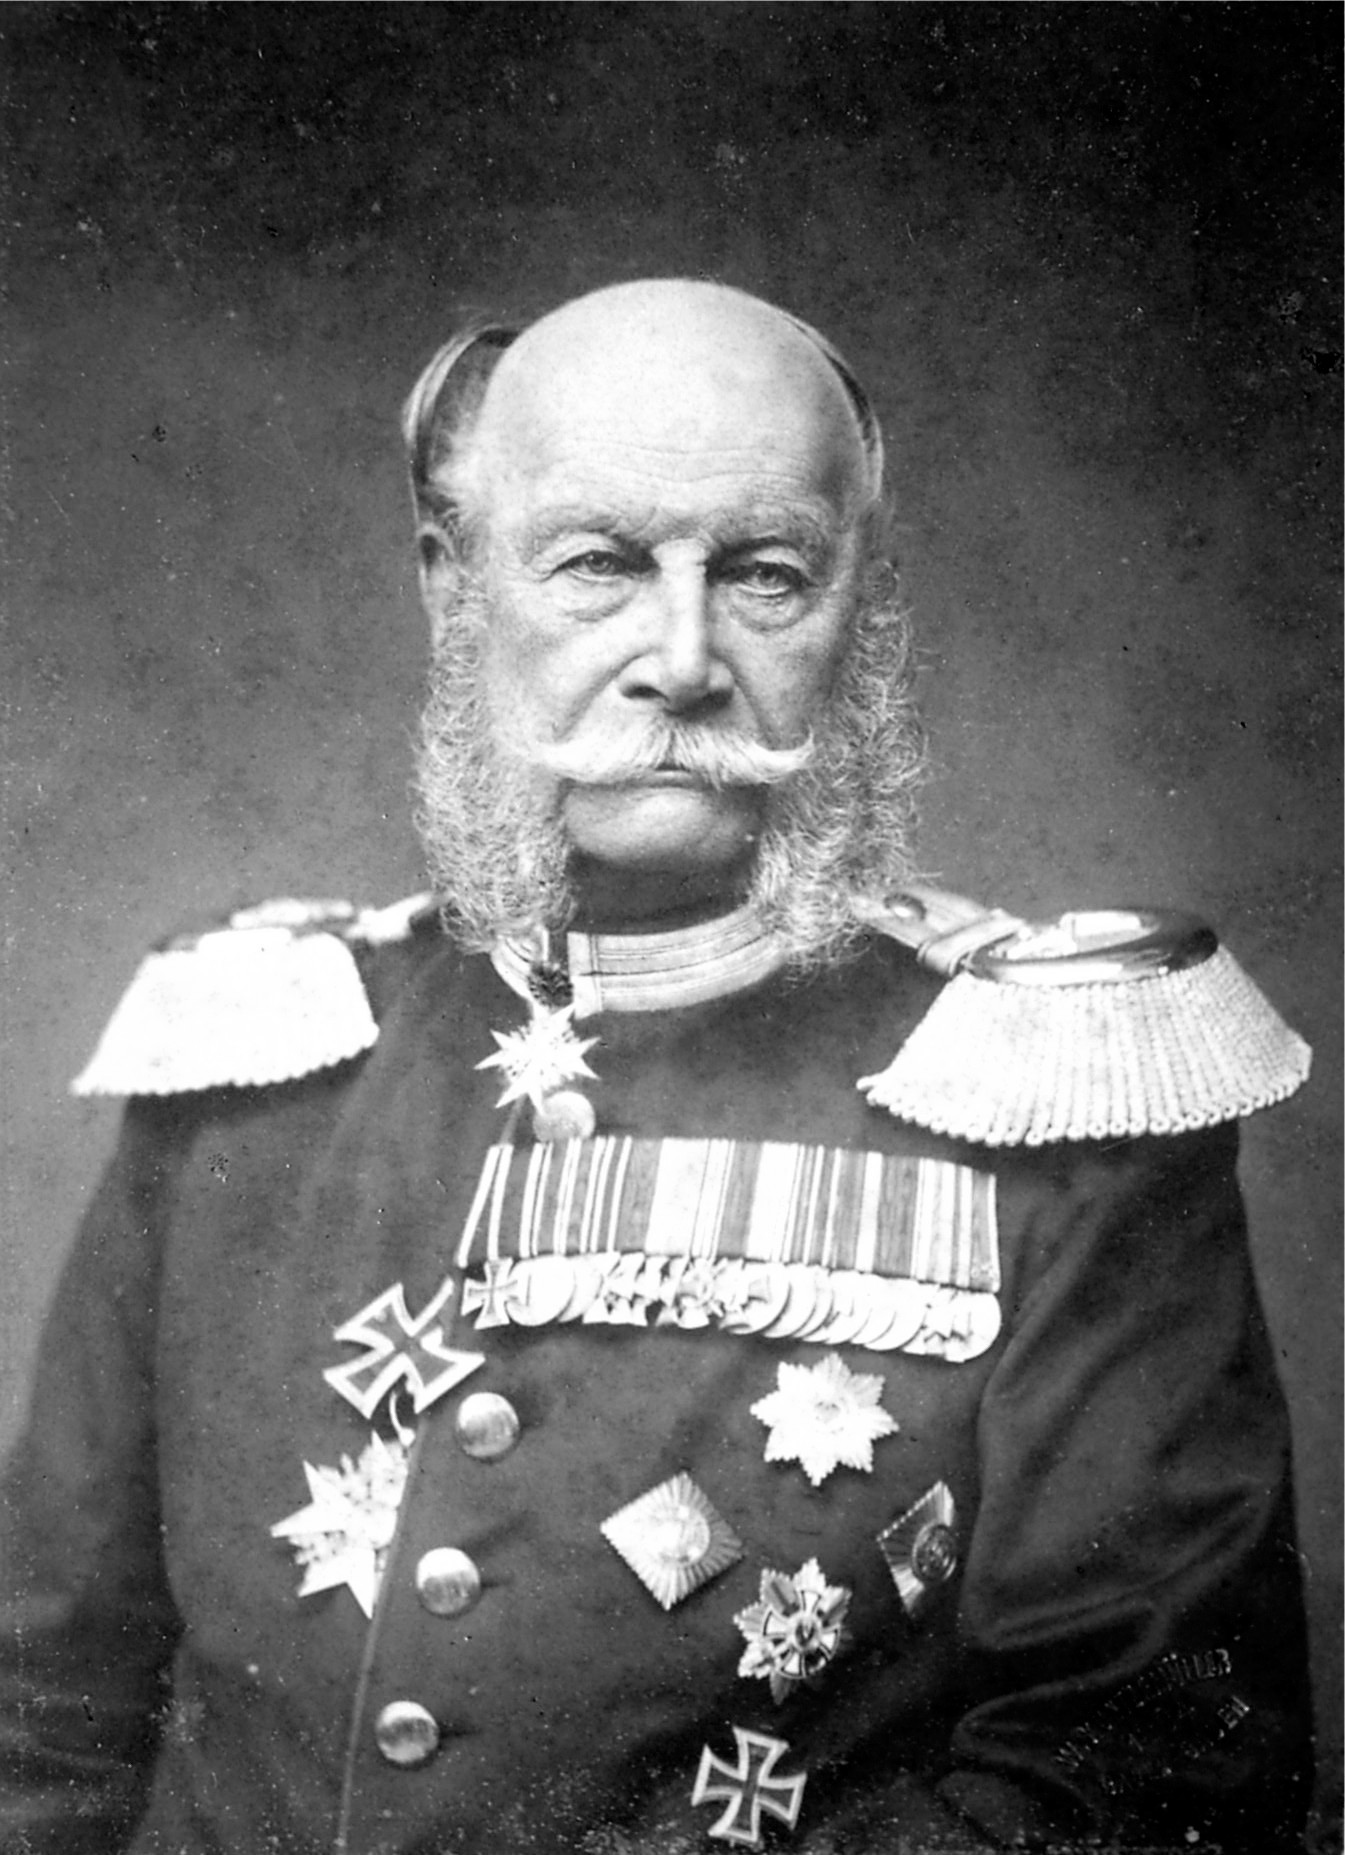 威廉一世,拍摄预约1884年